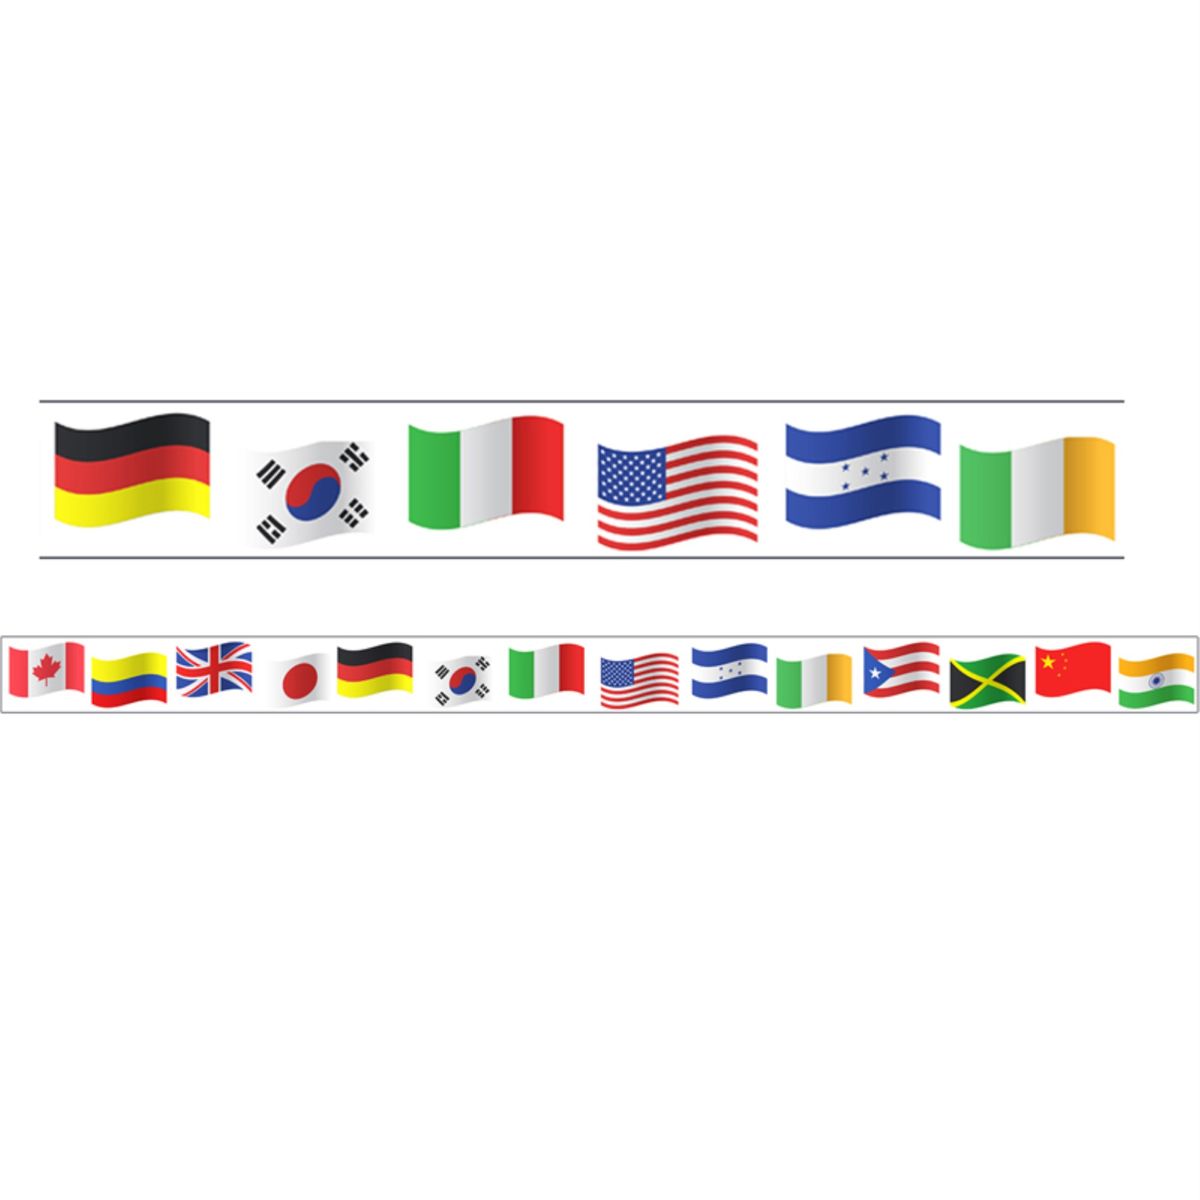 楽天Walmart 楽天市場店[RDY] [送料無料] Charles Leonard 世界の国旗をテーマにしたマグネットボーダー／トリム 長方形カット 1パック24インチ 2パック [楽天海外通販] | Charles Leonard World Flags Theme Magnetic Borders/Trims, Rectangl